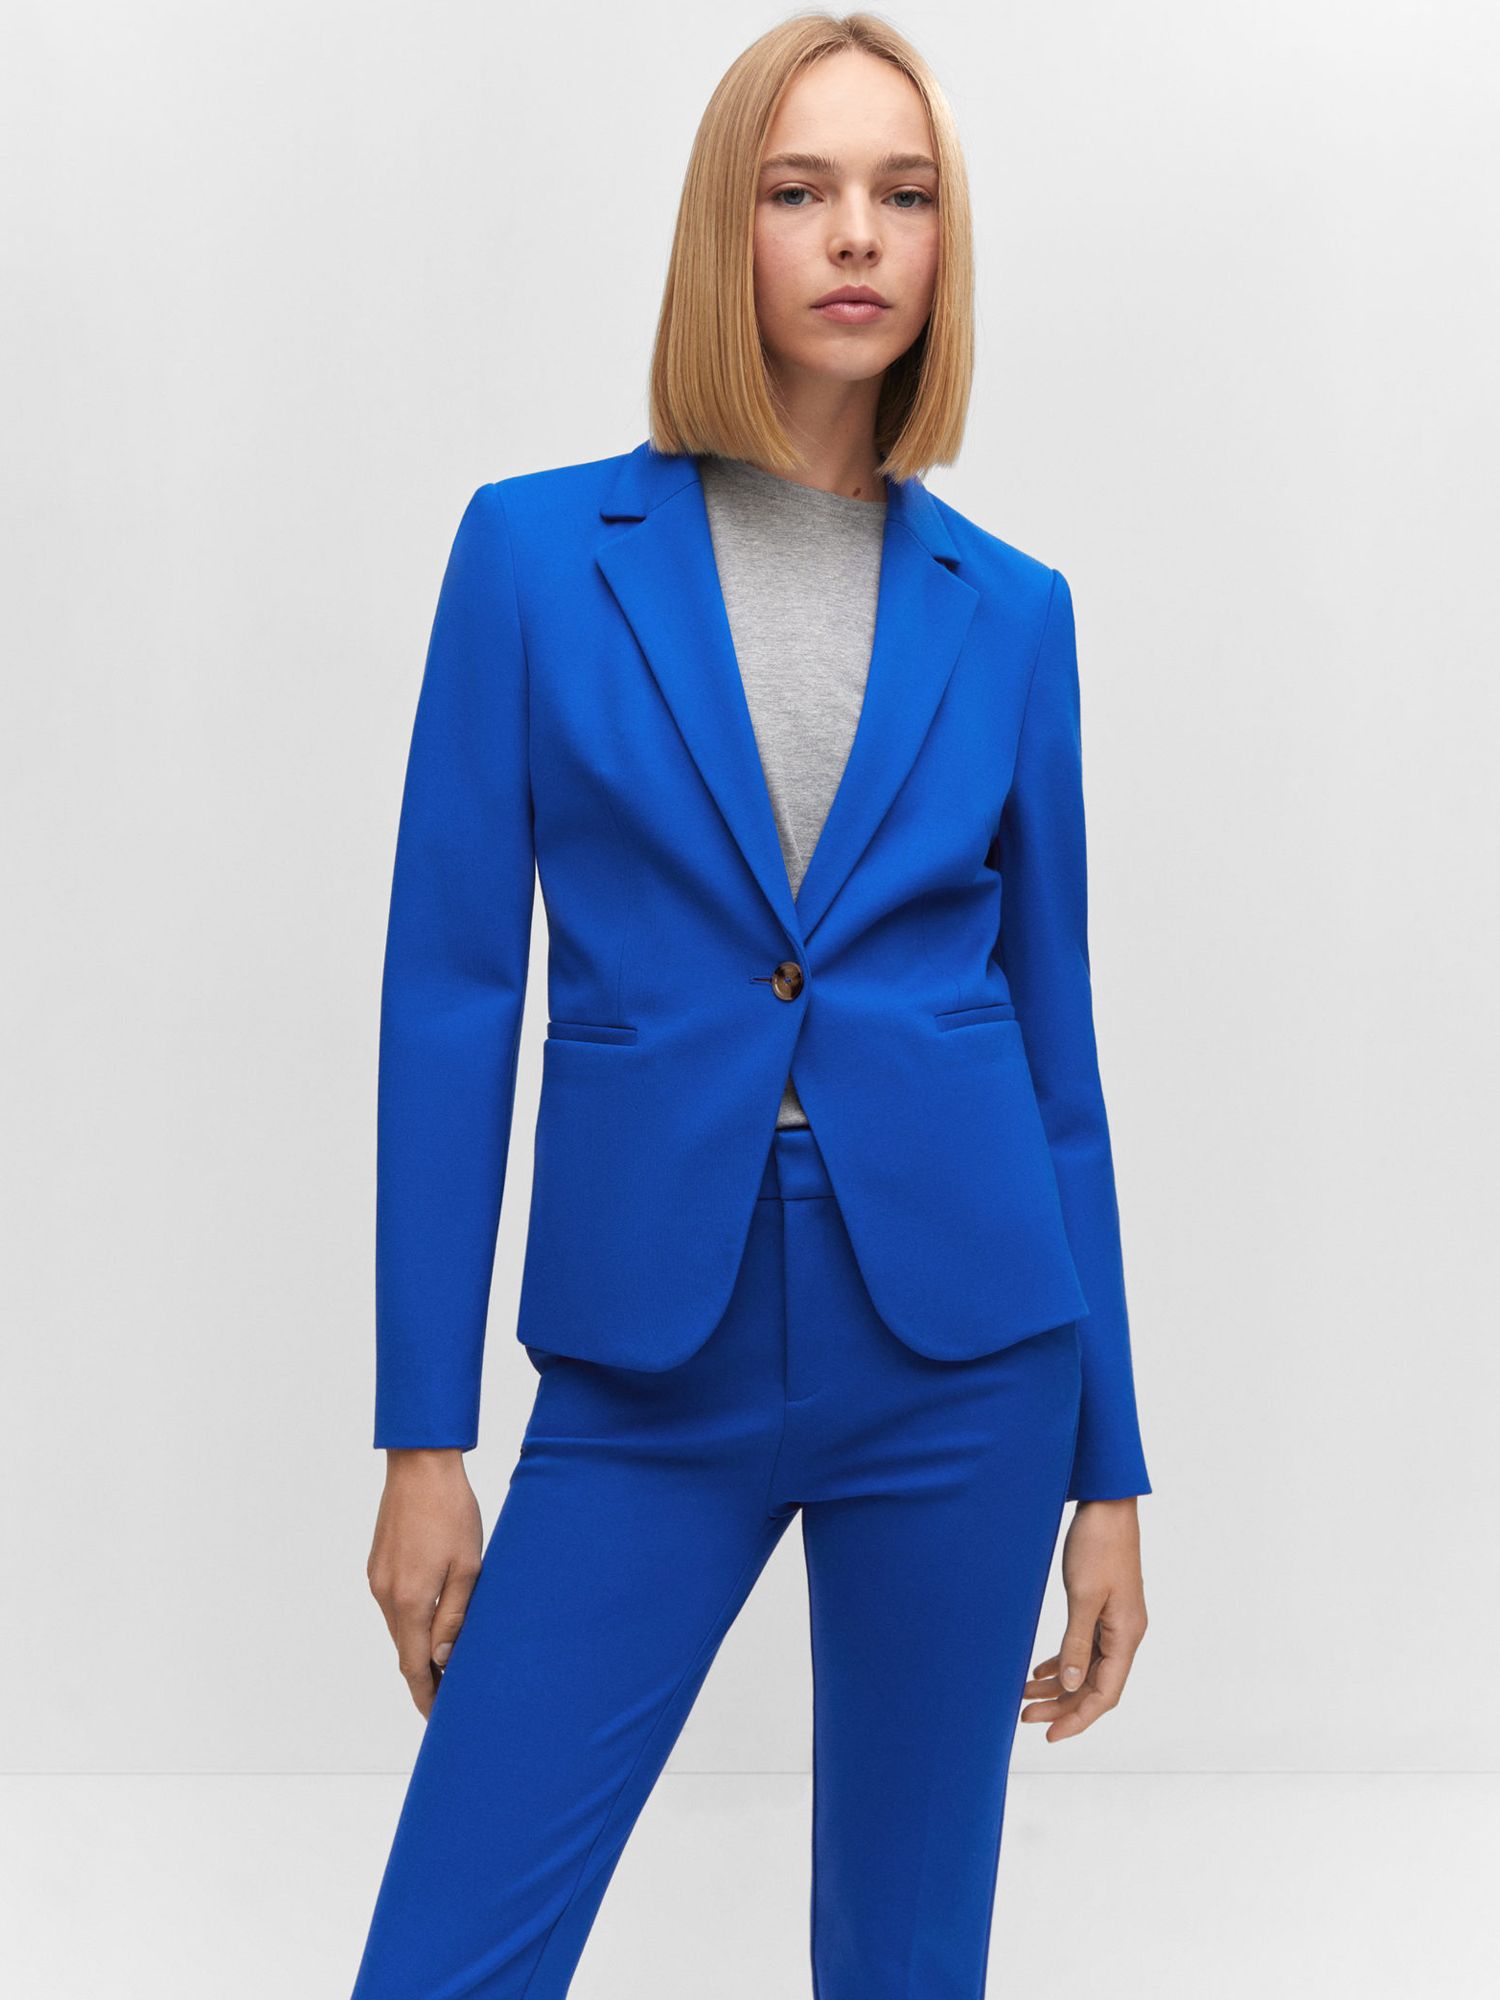 Ivory Closet + Electric Blue Blazer - Blue Blazer